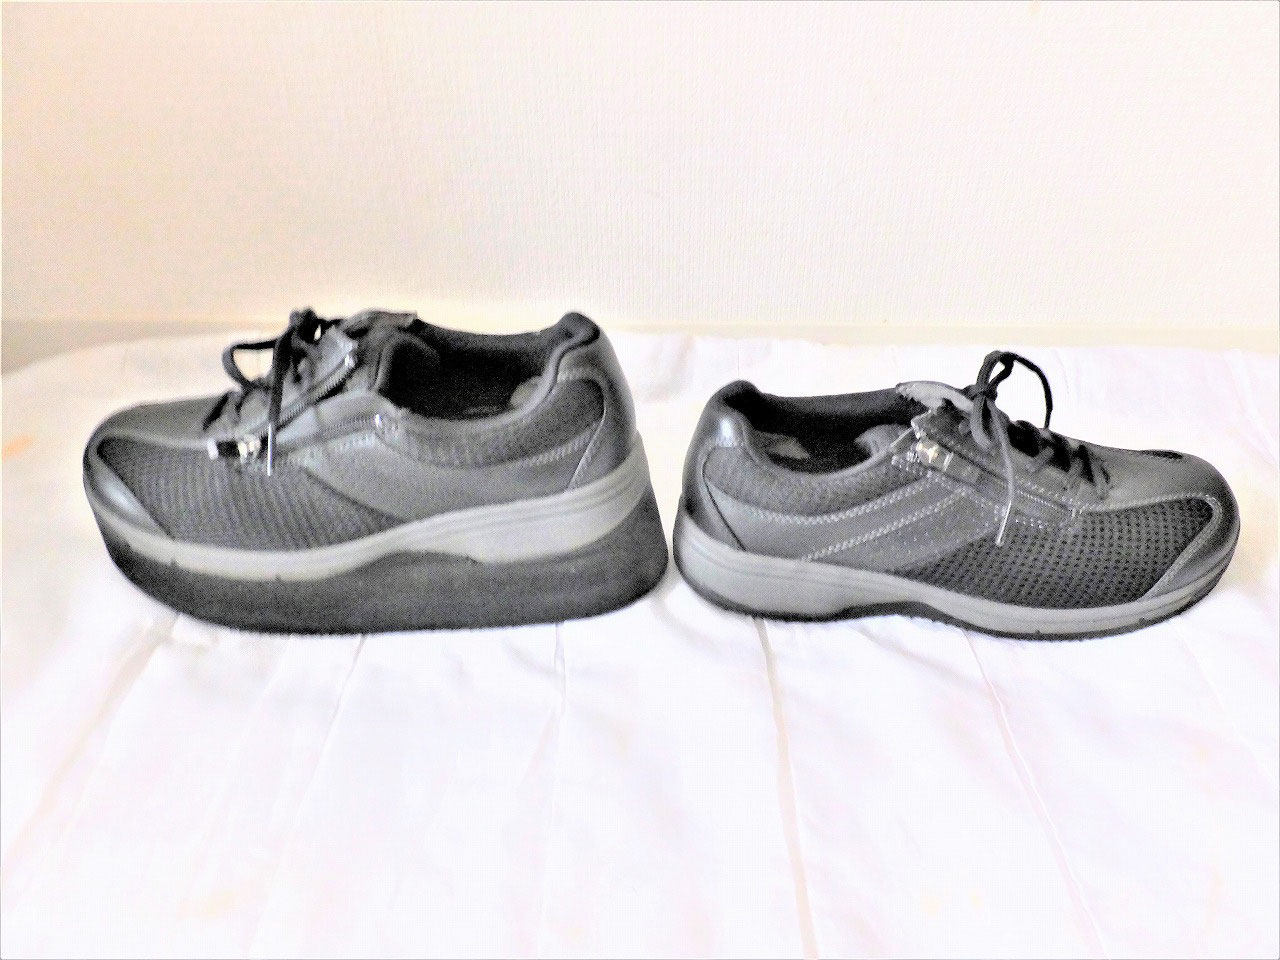 アサヒメディカルシューズで補高靴を作成しました。 - 健康靴アミカ 補高靴・オーダーシューズの作製・出張販売